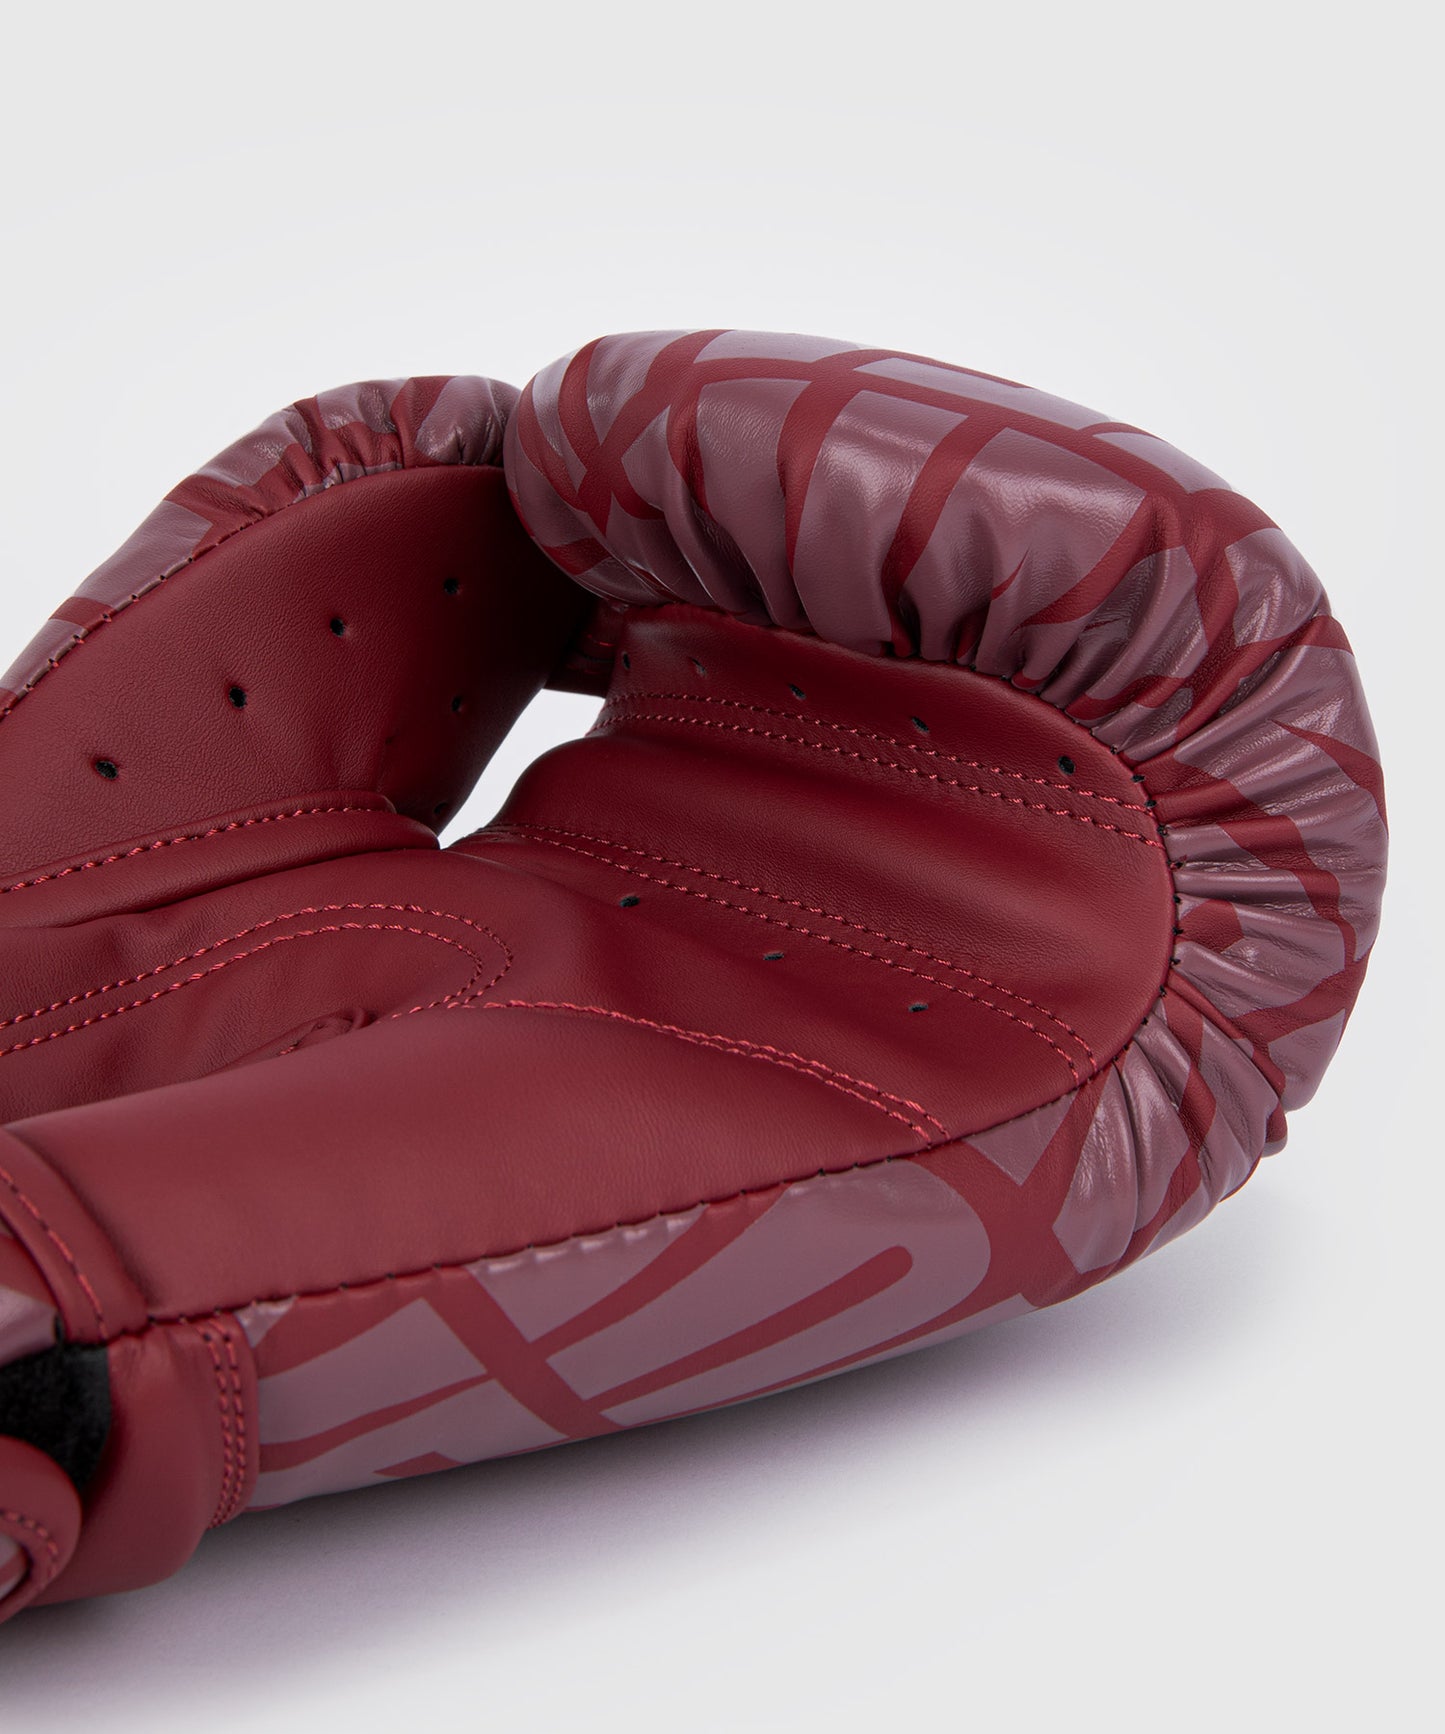 Venum Contender 1.5 XT Boxing Gloves Burgundy/White